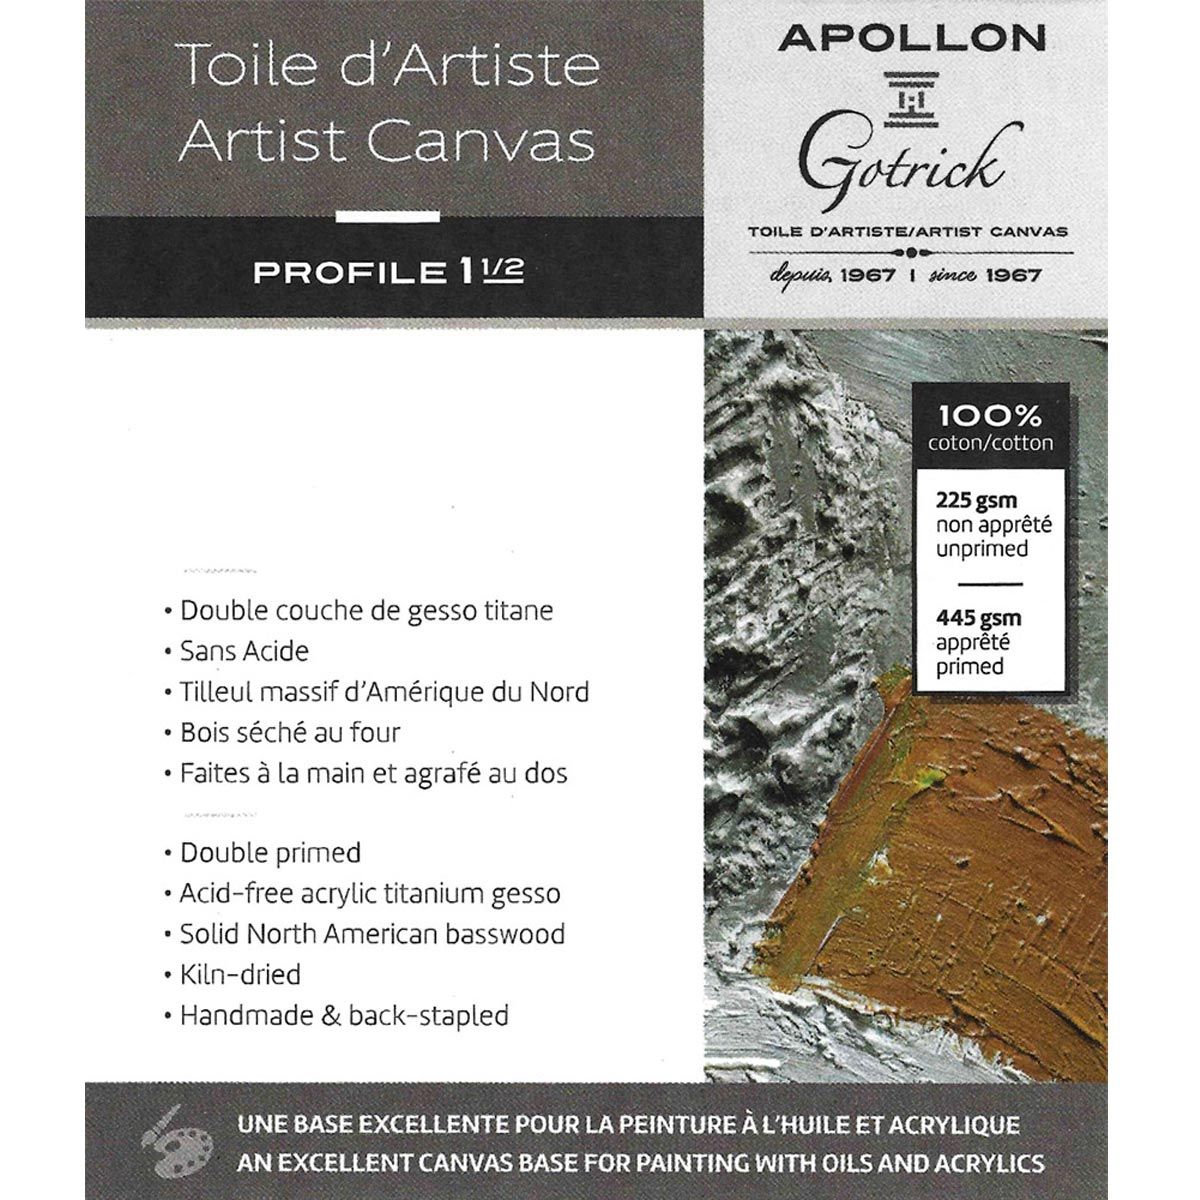 Apollon Gotrick Gallery Artist Canvas Profile 1½" - 16" x 48"